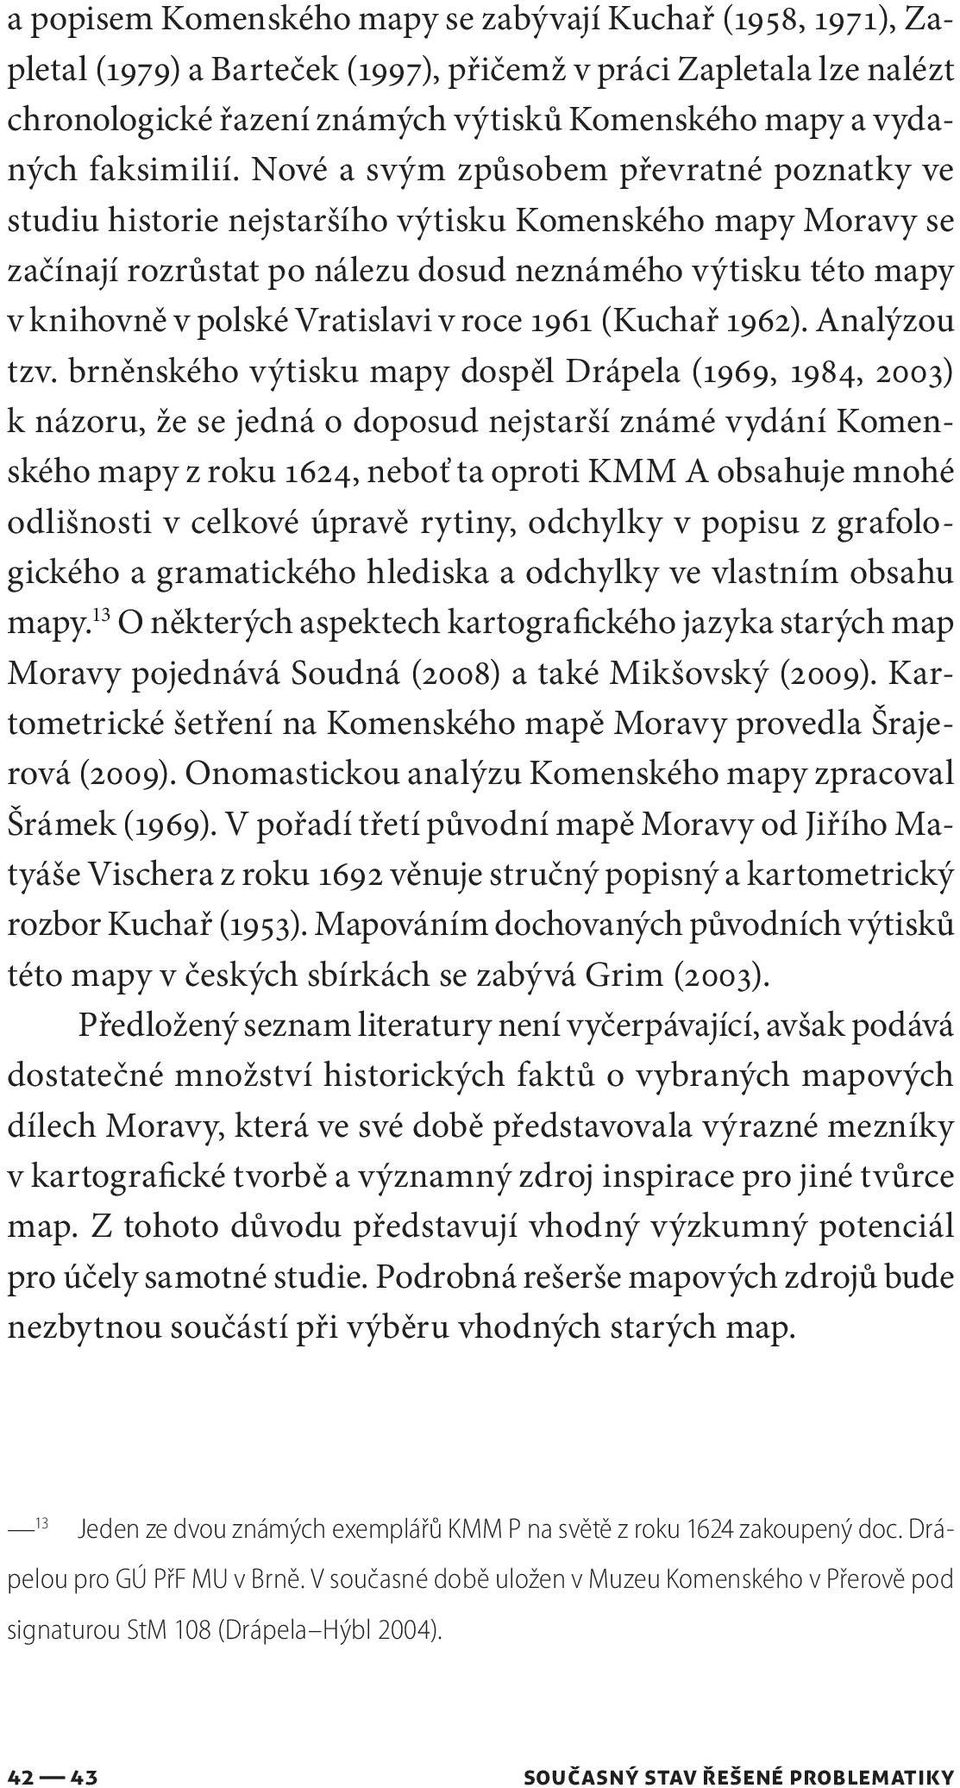 Nové a svým způsobem převratné poznatky ve studiu historie nejstaršího výtisku Komenského mapy Moravy se začínají rozrůstat po nálezu dosud neznámého výtisku této mapy v knihovně v polské Vratislavi